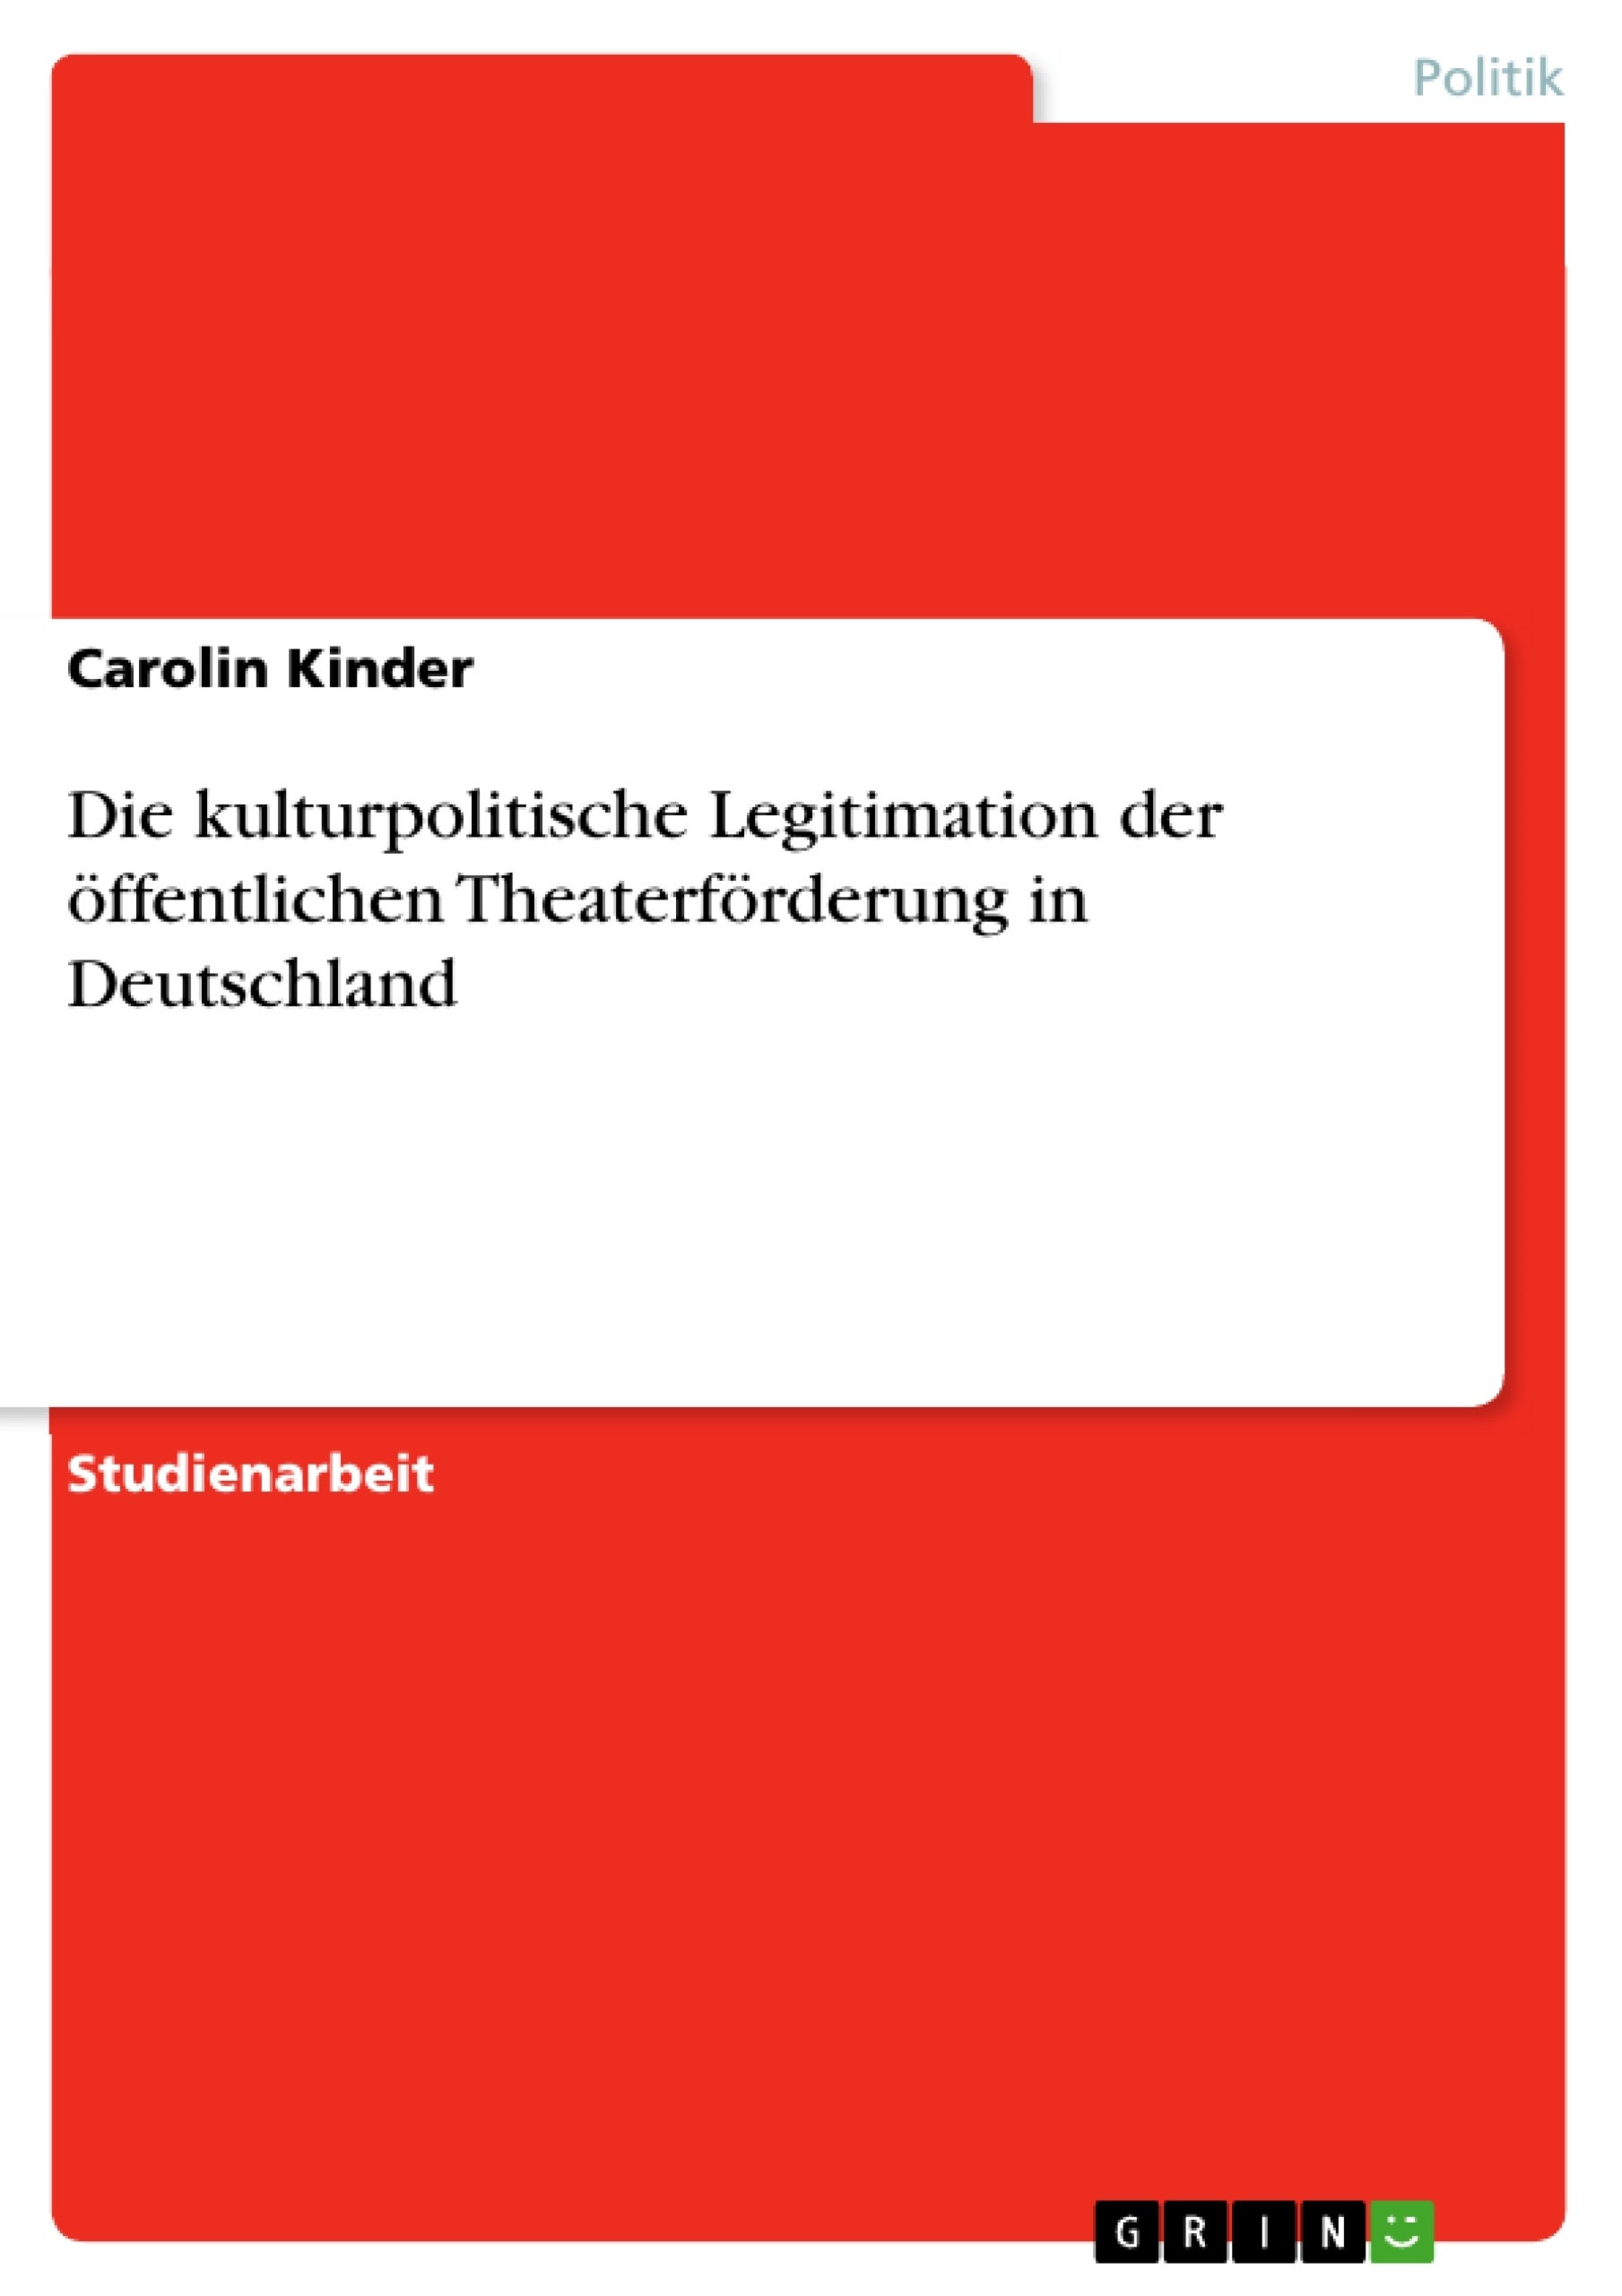 Título: Die kulturpolitische Legitimation der öffentlichen Theaterförderung in Deutschland